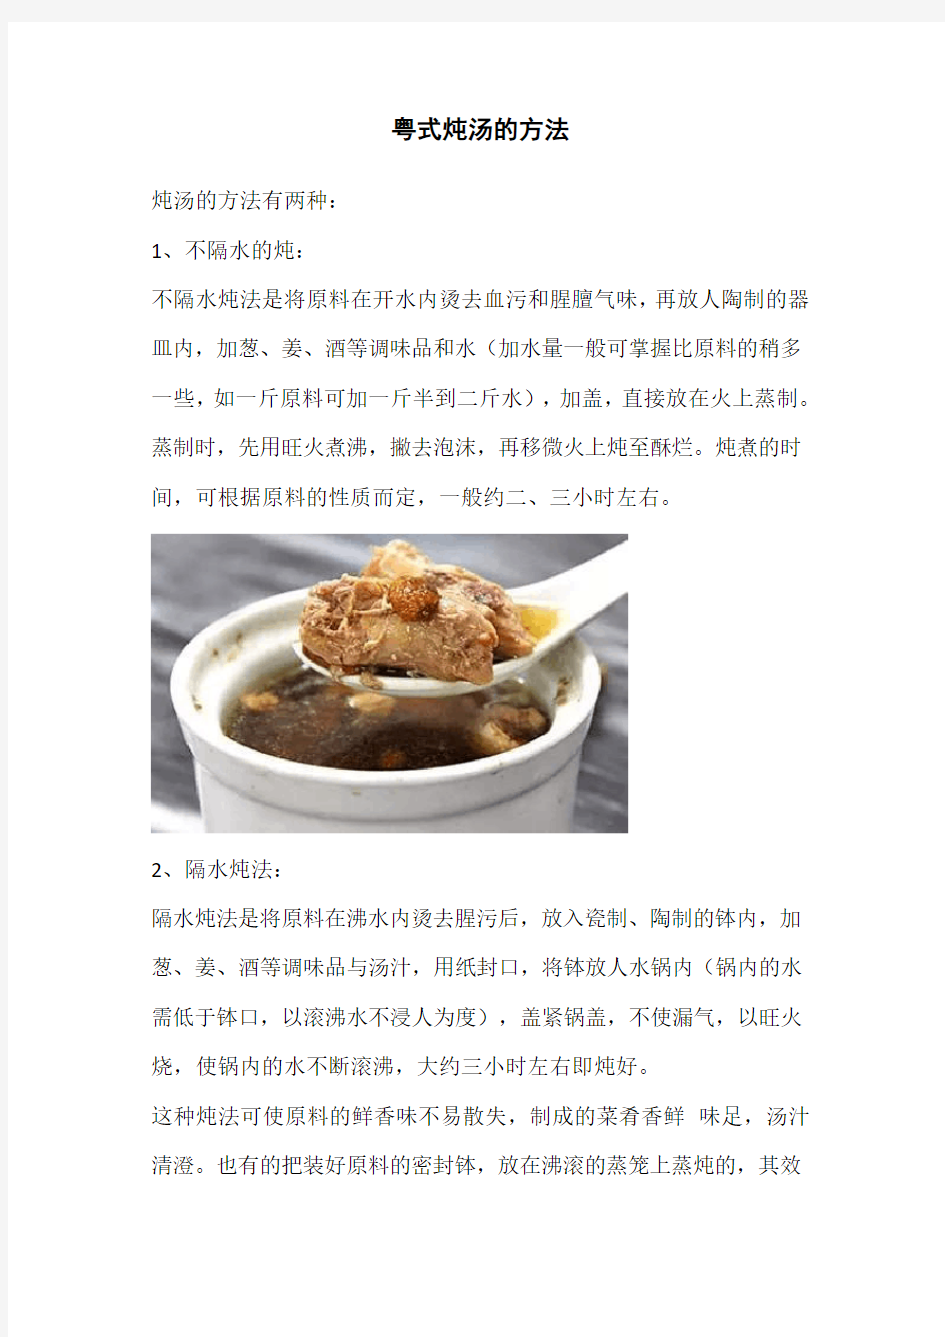 粤式炖汤的方法